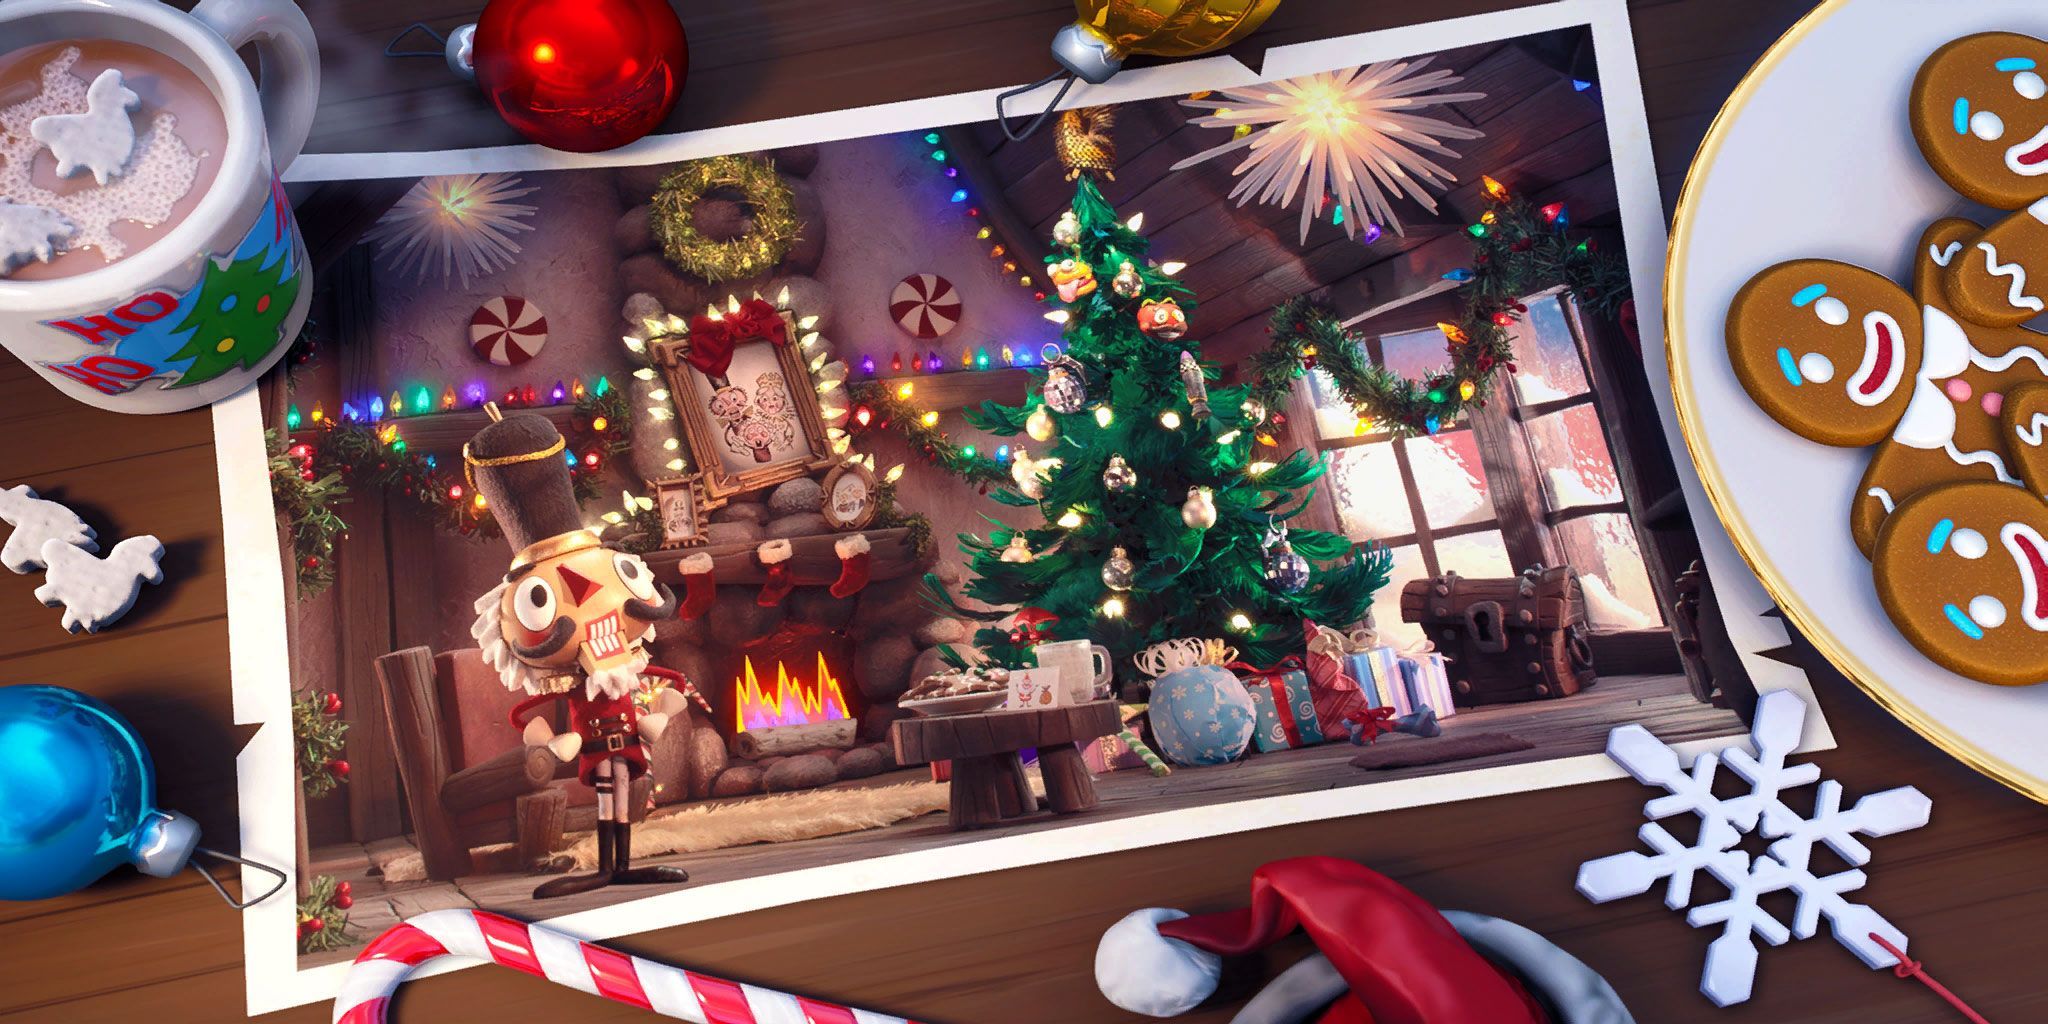 Fortnite Loading Screen Wallpaper. Christmas wallpaper, Gaming wallpaper, Wallpaper